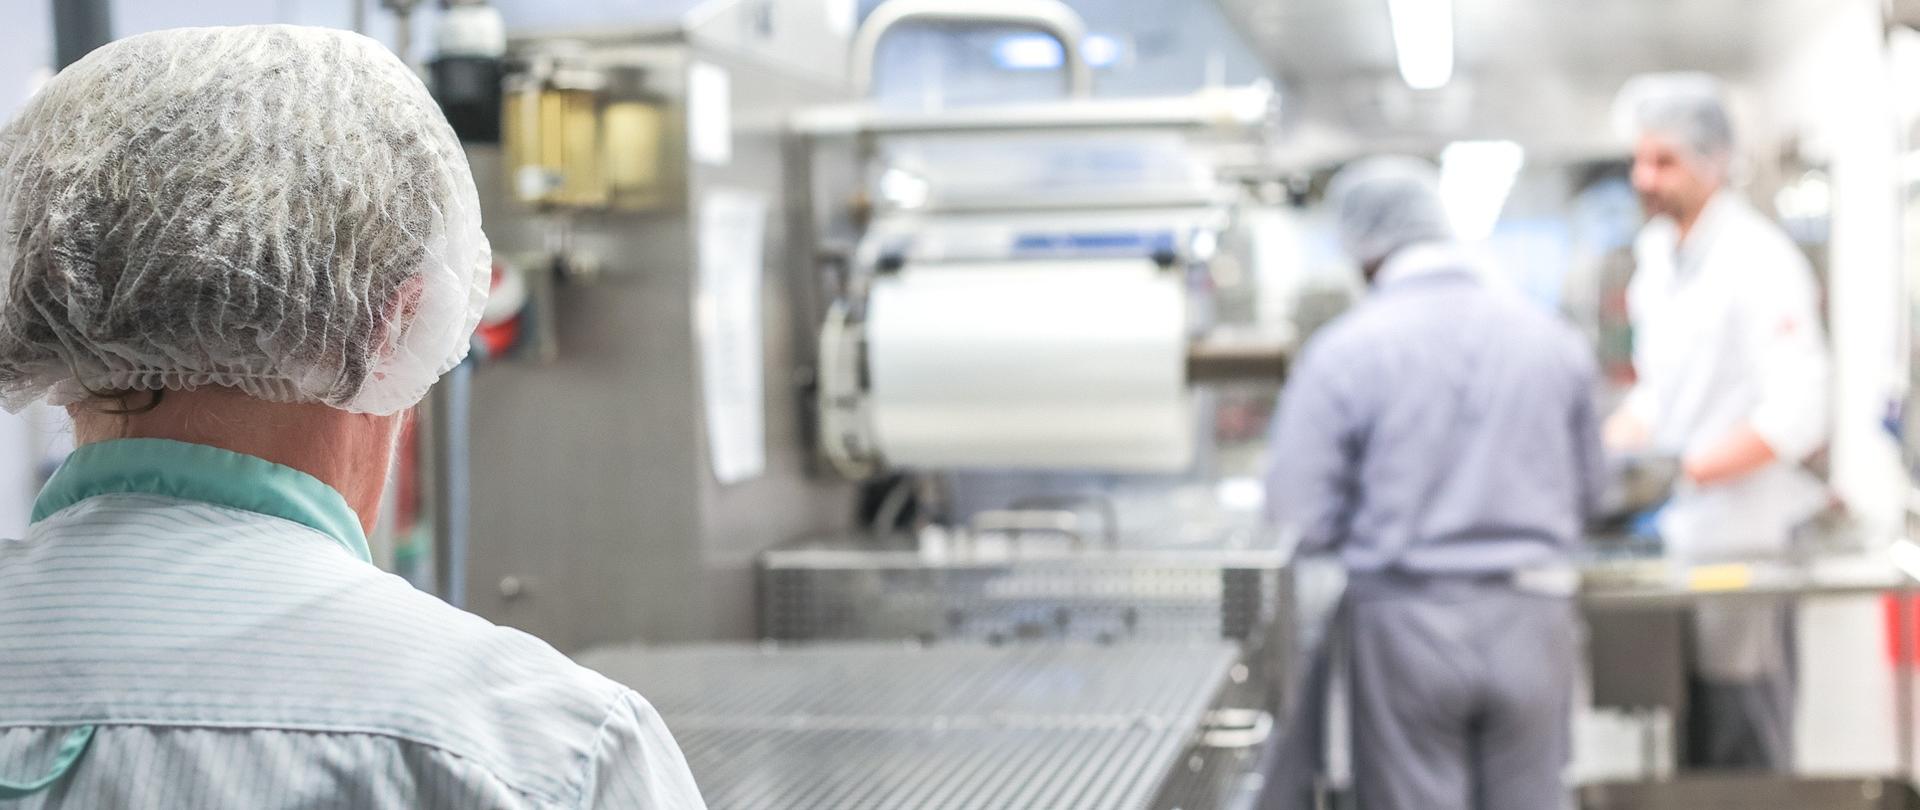 zdjęcie przedstawia osoby pracujące w kuchni